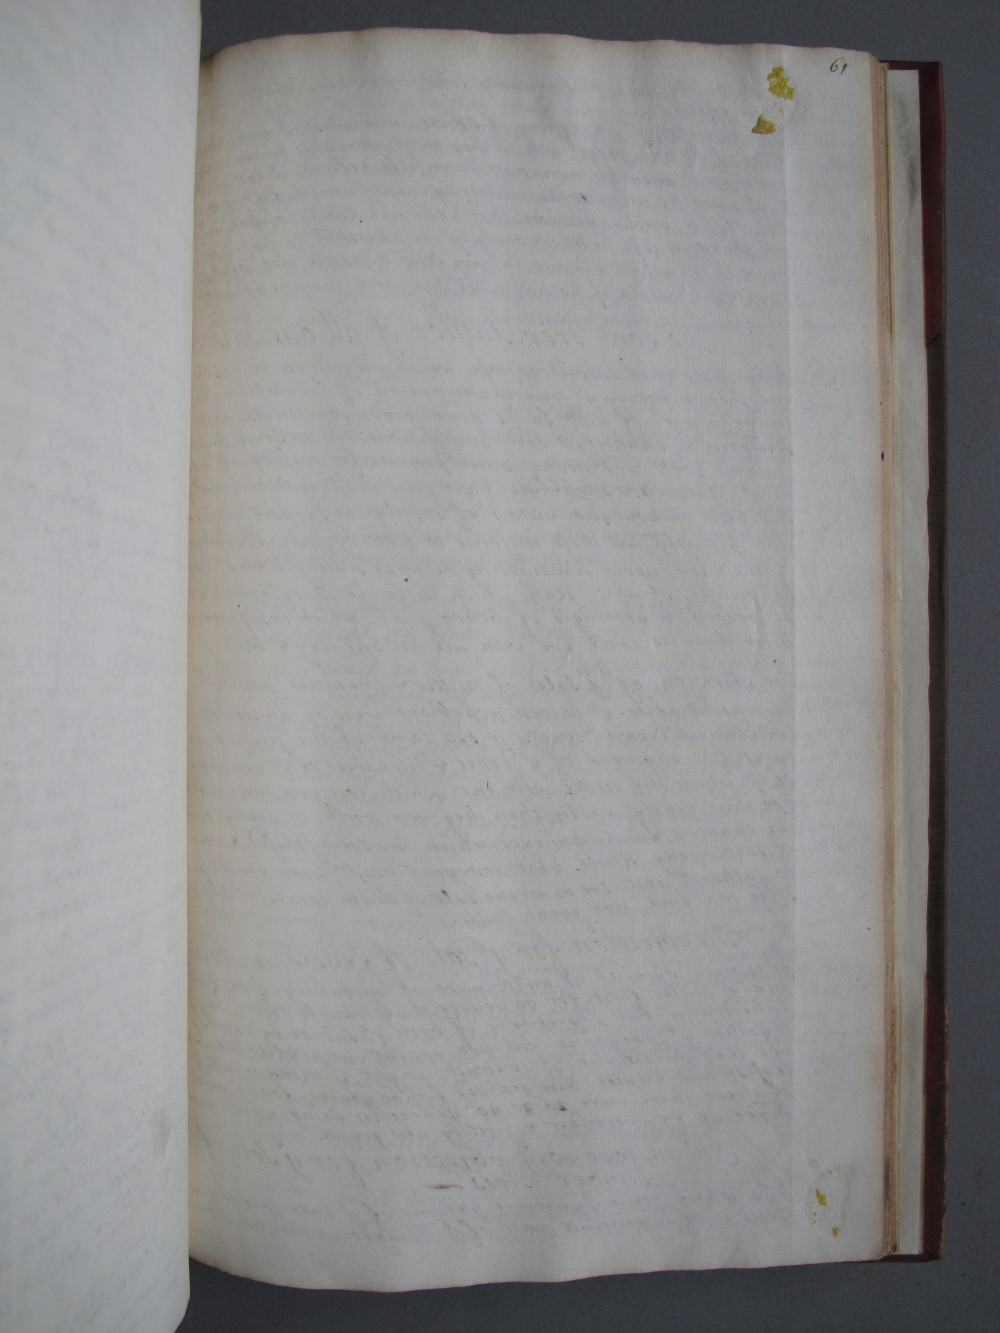 Folio 61 recto